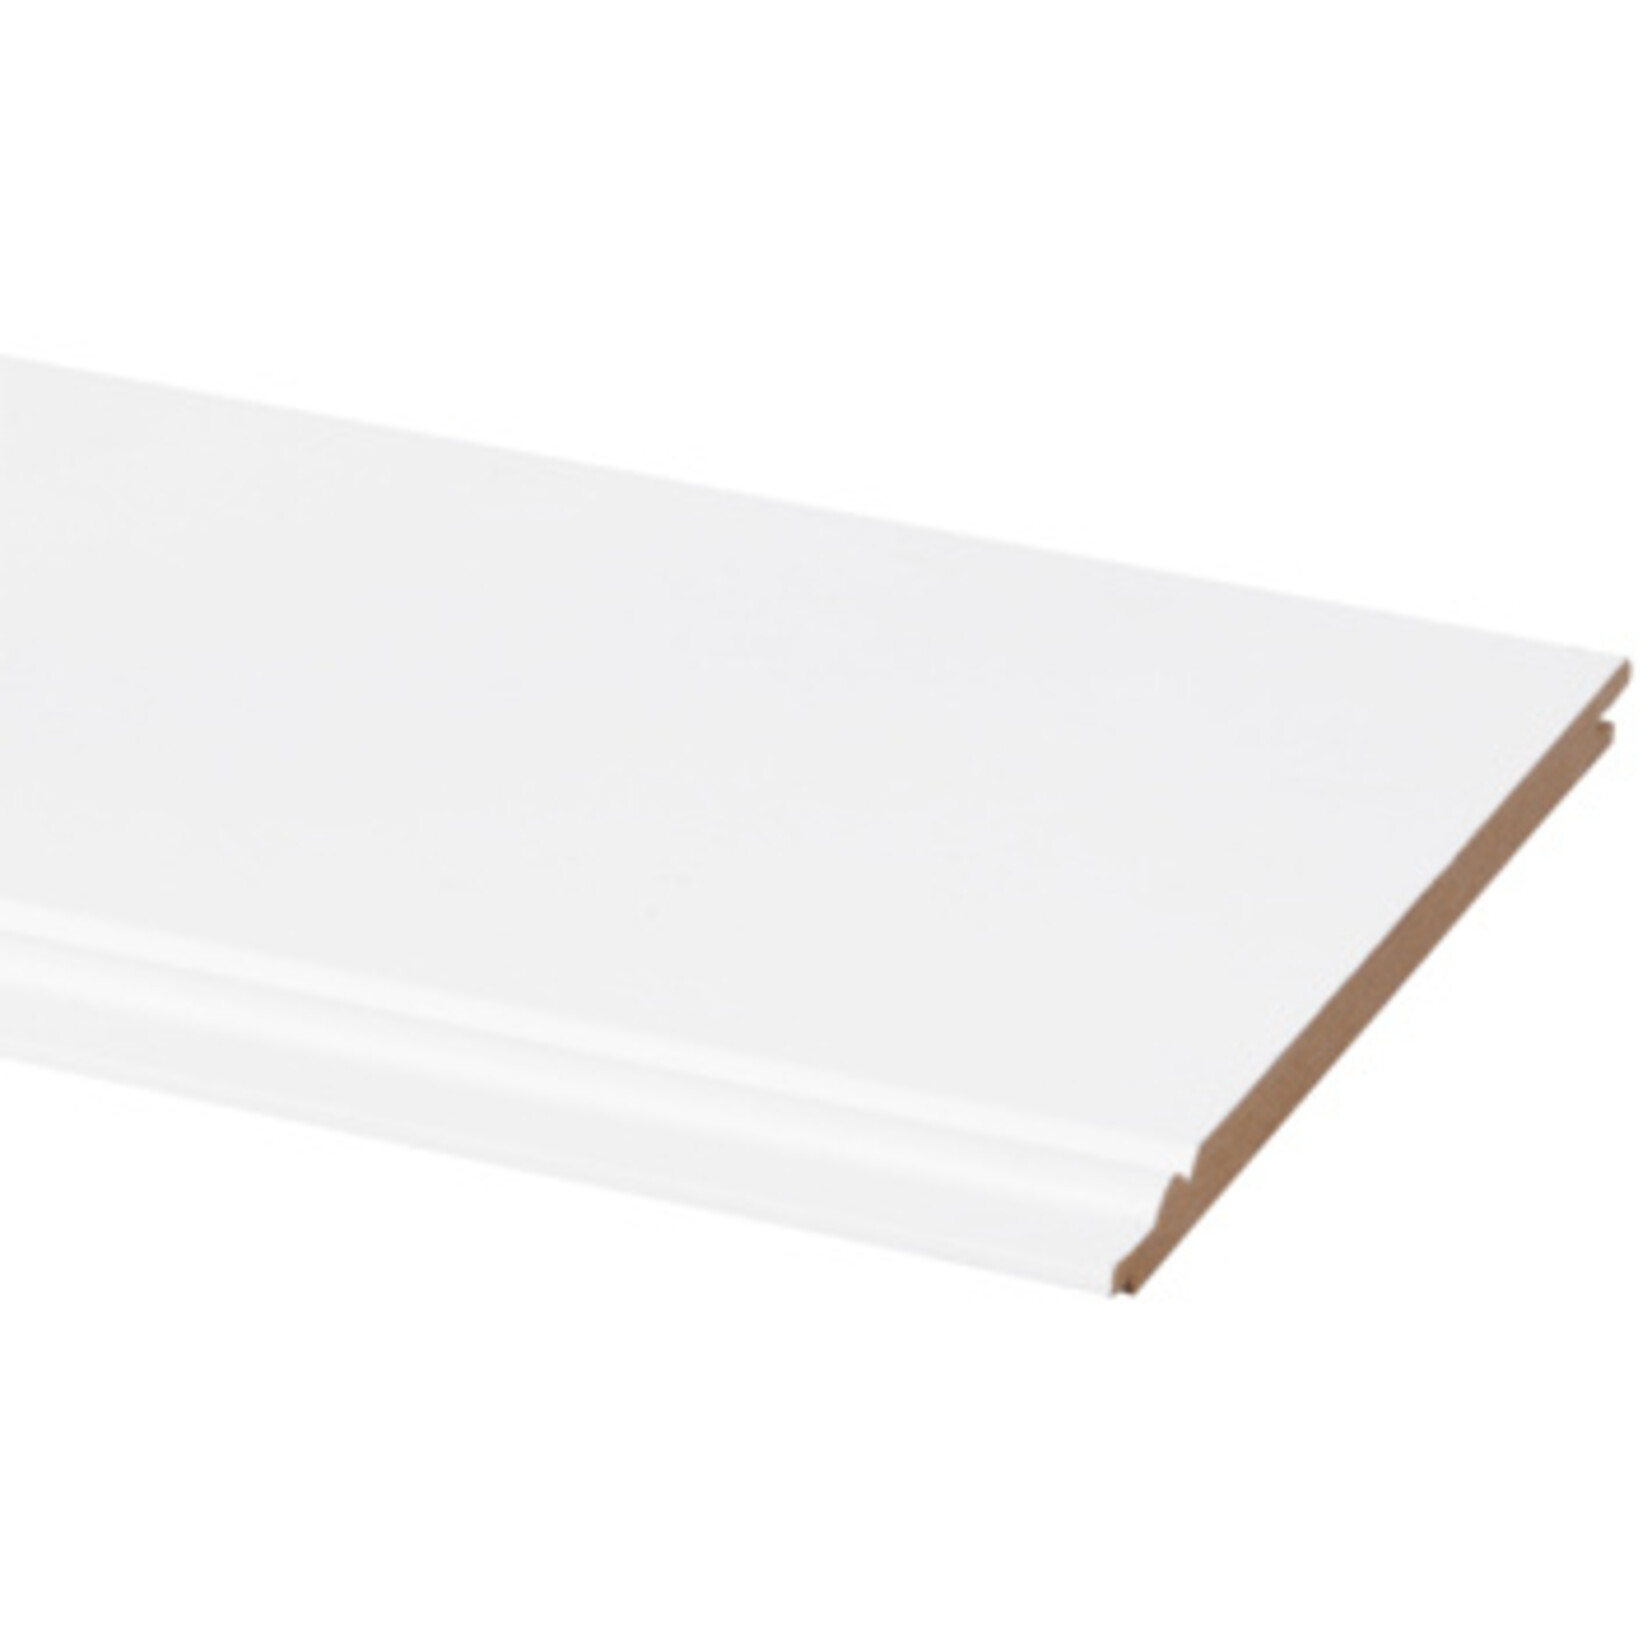 Cando Wand-en plafondpaneel MDF kraal wit gegrond 8x135 mm 260 cm 5 stuks